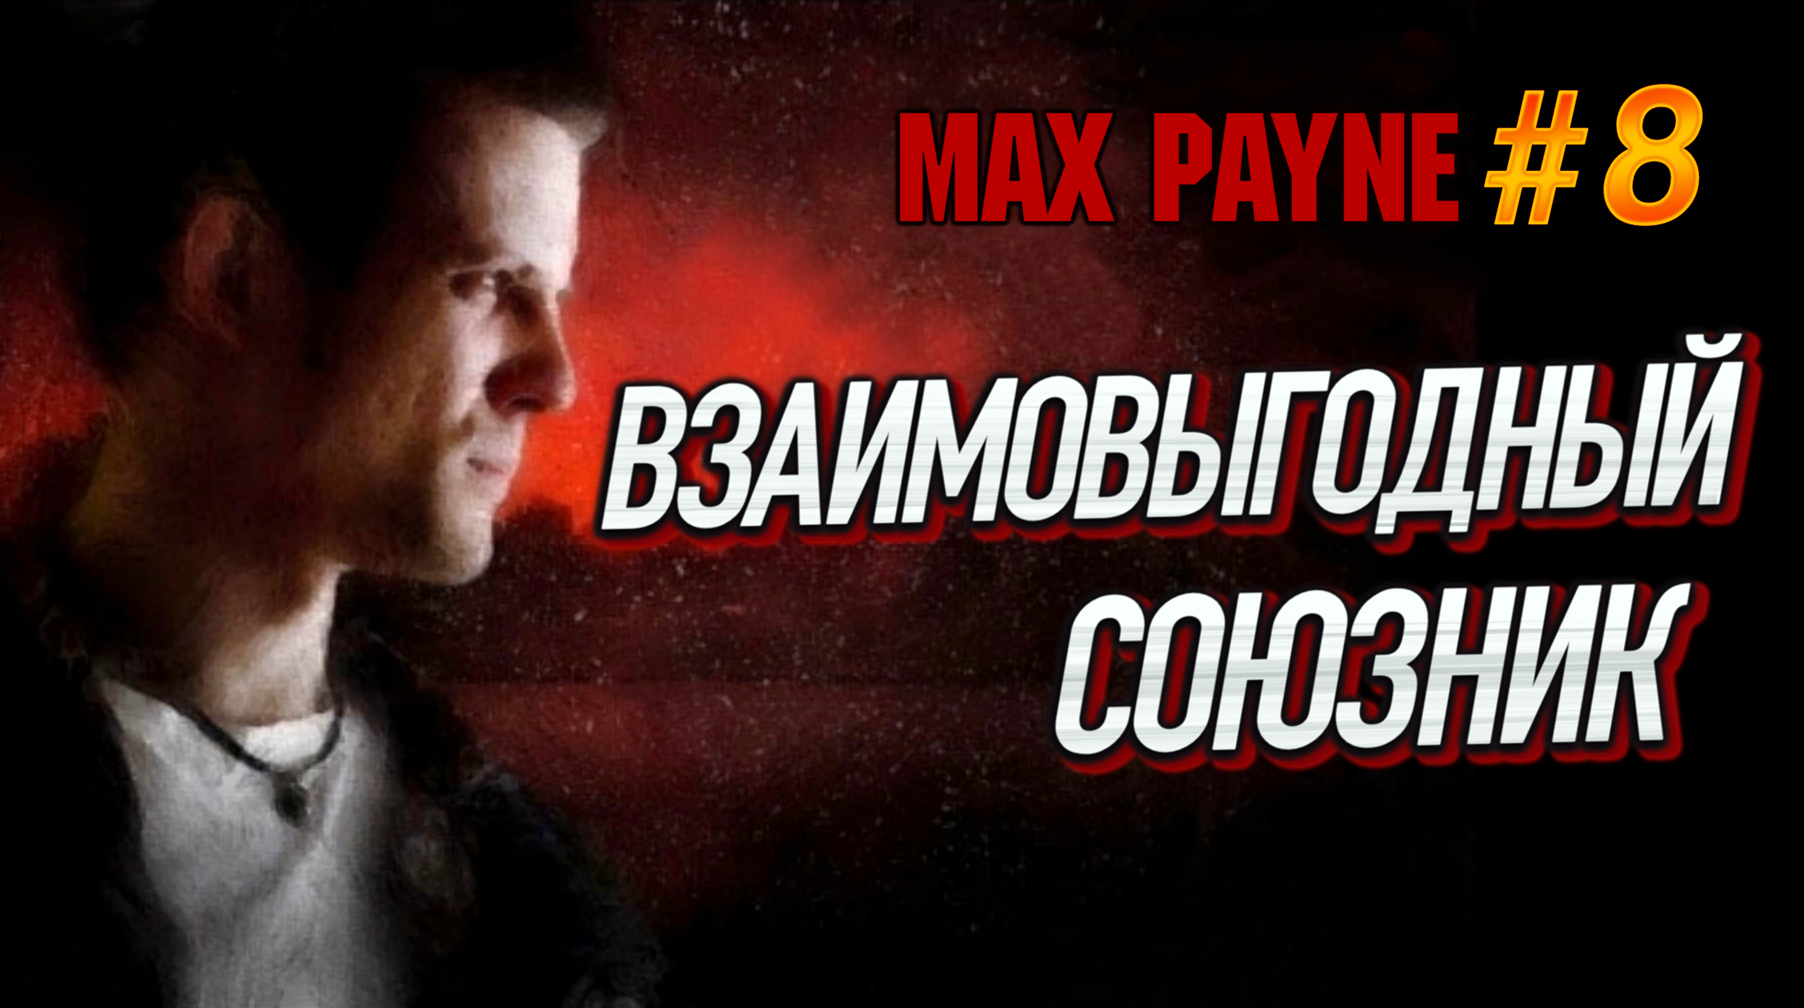 ПРИНИМАЕМ ЗАМАНЧИВОЕ ПРЕДЛОЖЕНИЕ! КОНТЕЙНЕРЫ С СЮРПРИЗОМ ИЛИ КАК ДОЛГО Я ИСКАЛ ВЫХОД? - Max Payne #8